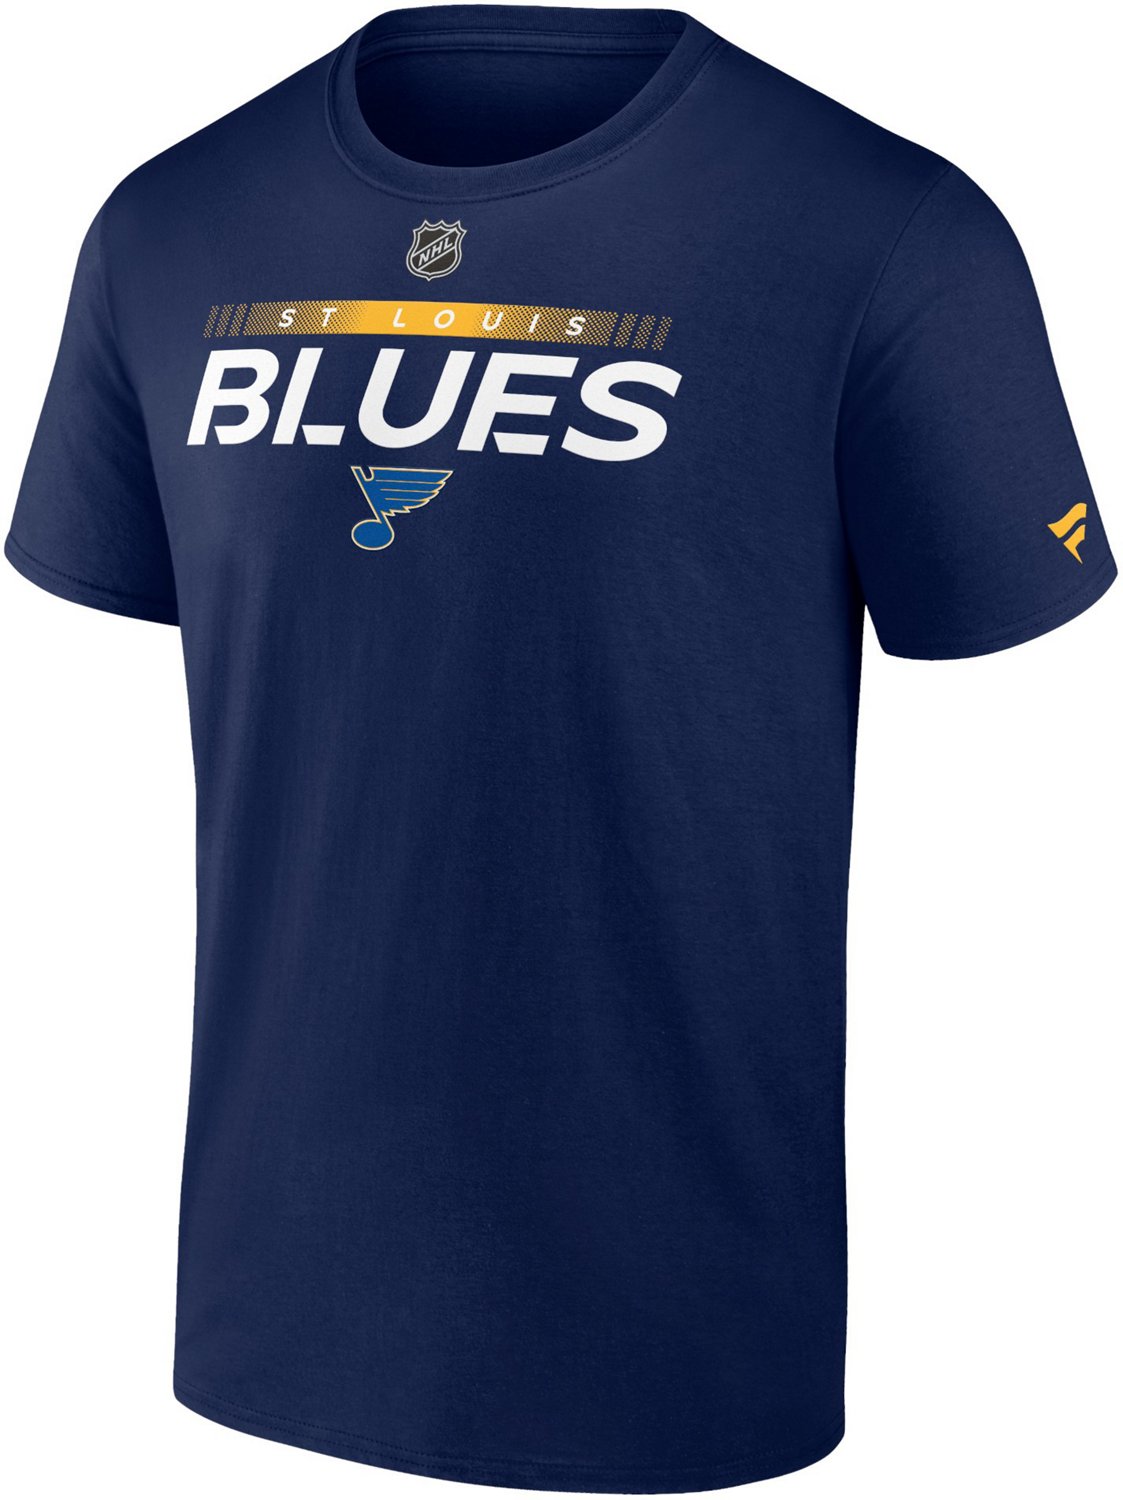 St. Louis Blues, St. Louis Blues Merchandise, St. Louis Blues Fan Gear